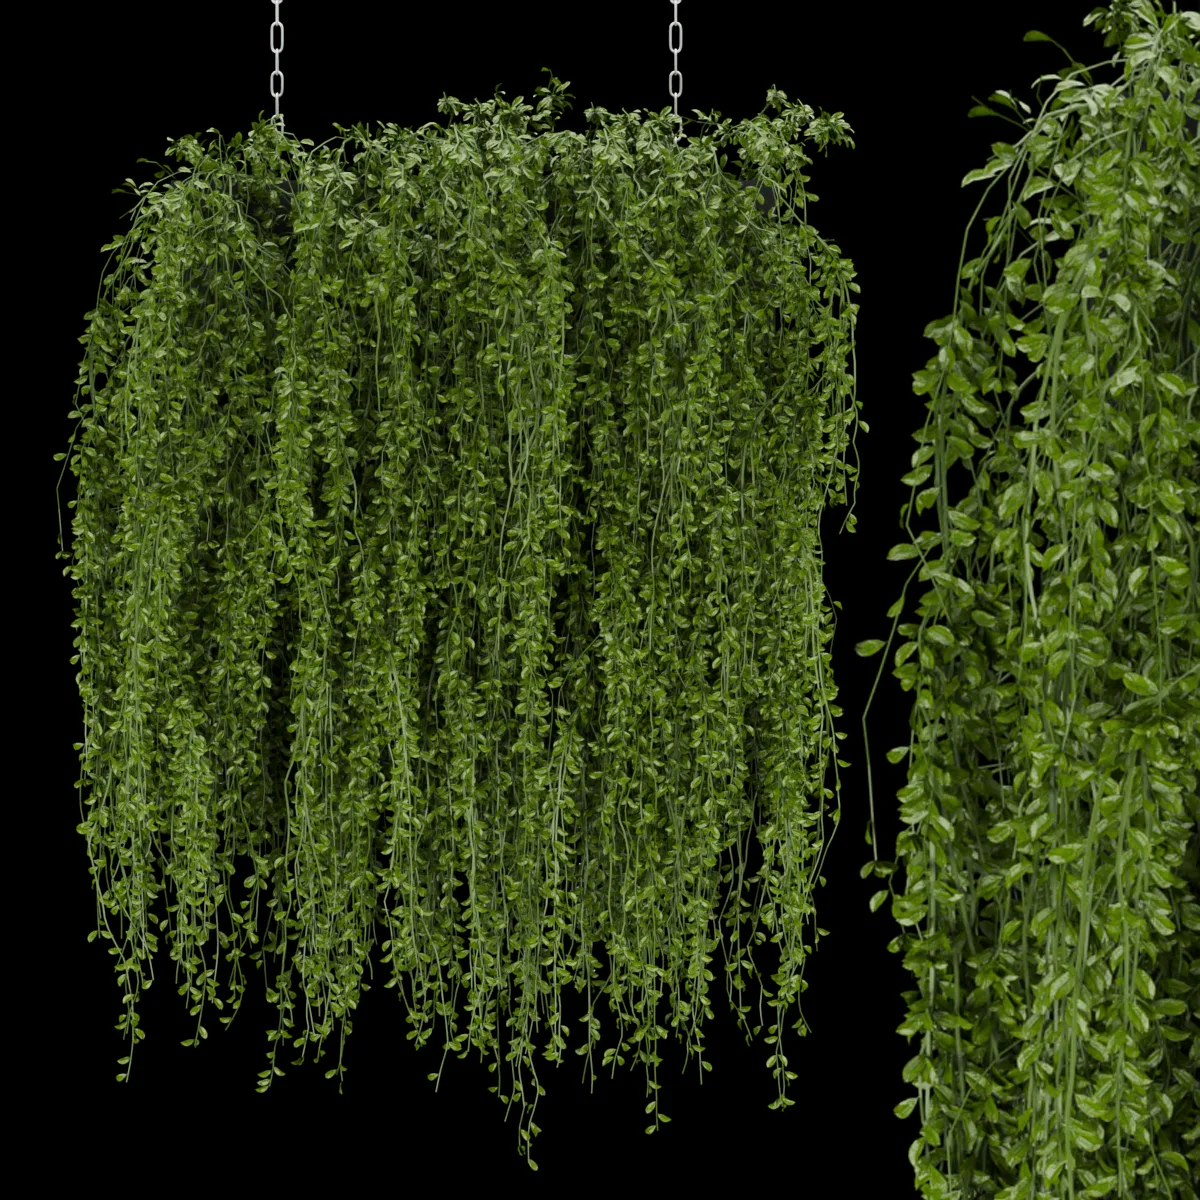 Collection plant vol 202 - ivy - hanging - leaf - blender - 3dmax - cinema 4d